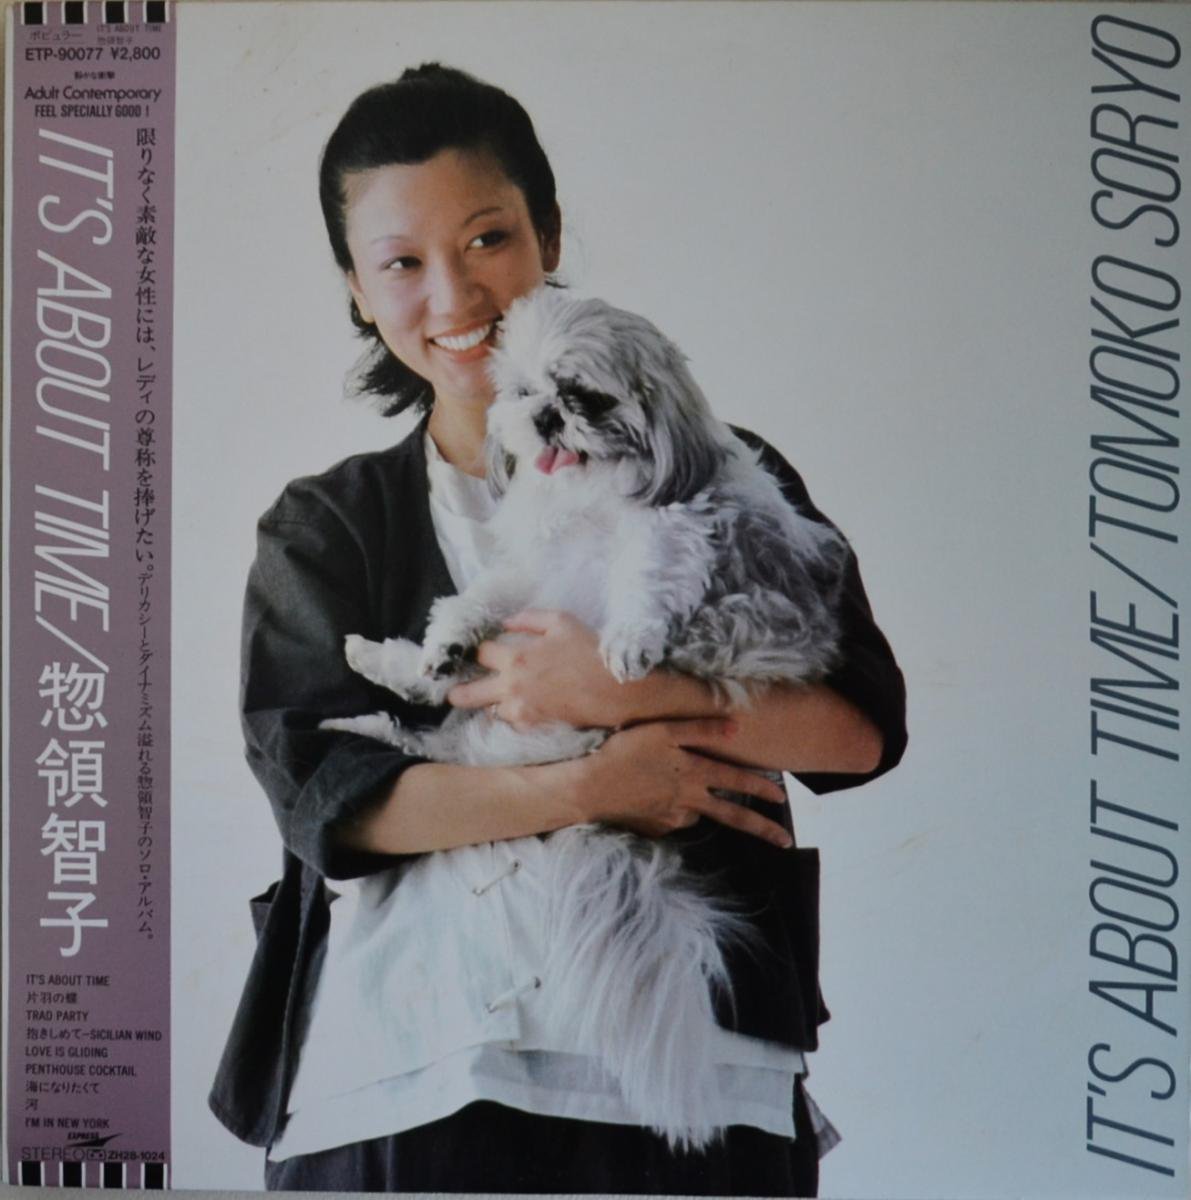 惣領智子 TOMOKO SORYO / IT'S ABOUT TIME (LP)